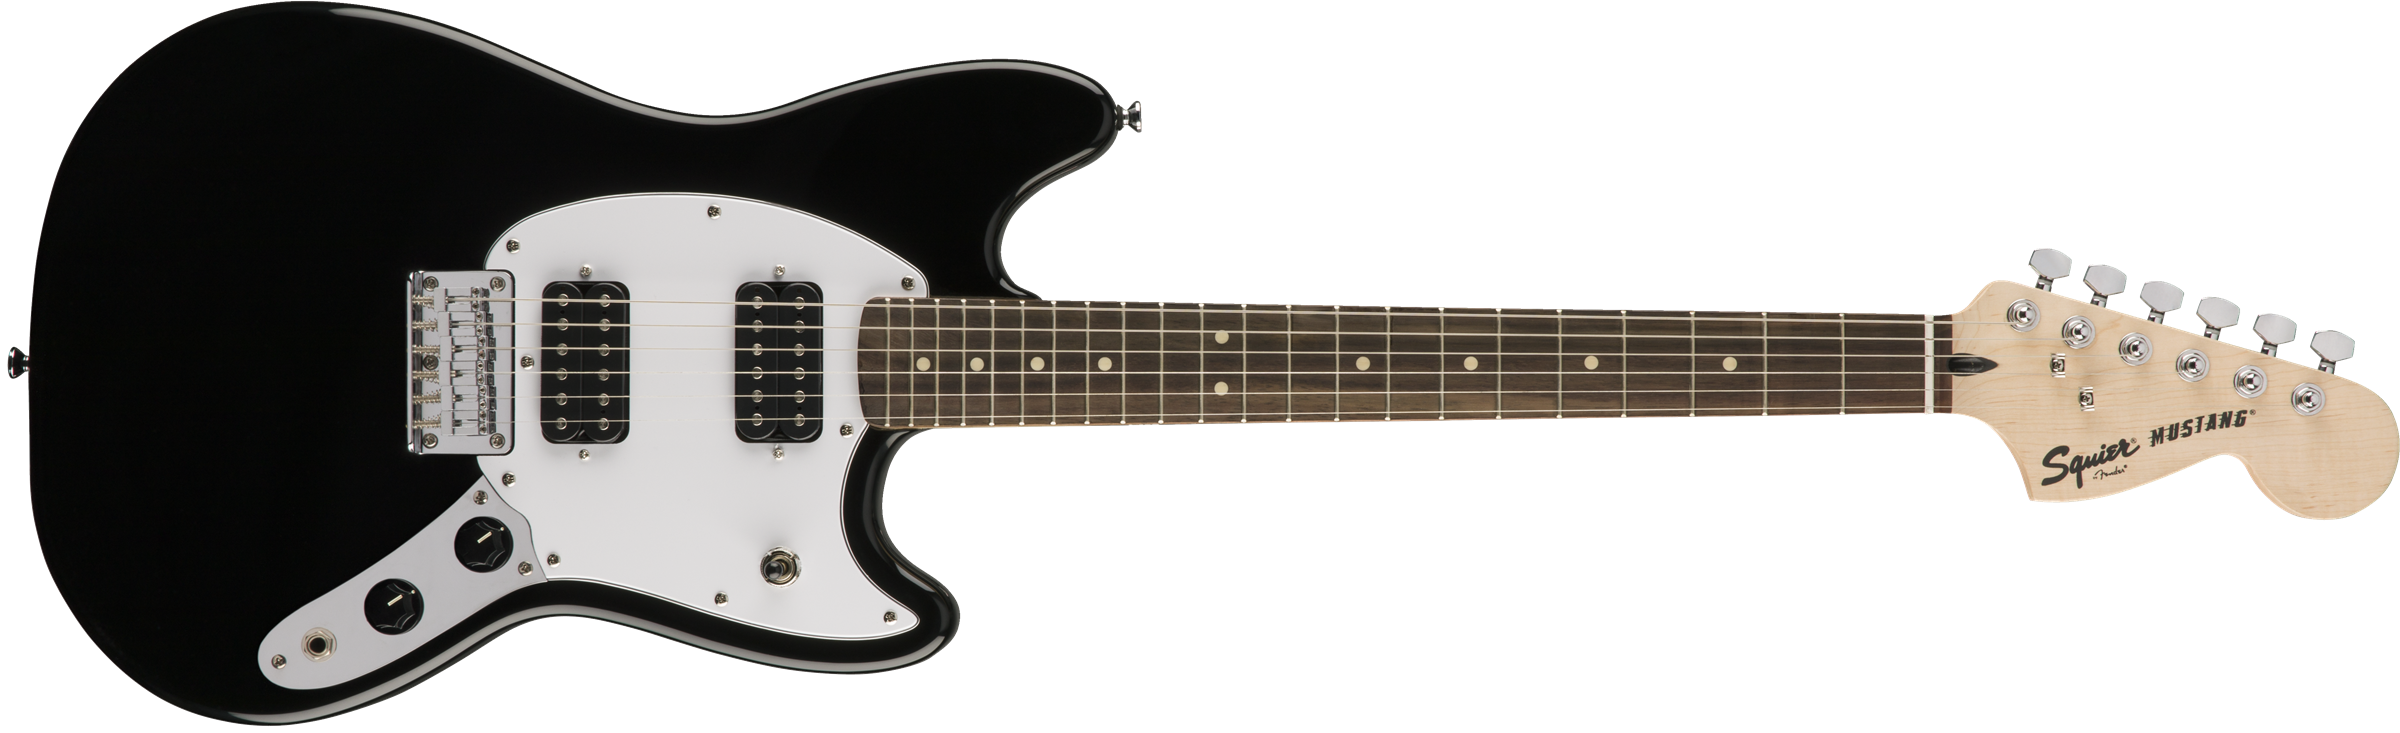 Squier Mustang Bullet Hh 2019 Ht Lau - Black - Guitarra electrica retro rock - Variation 1